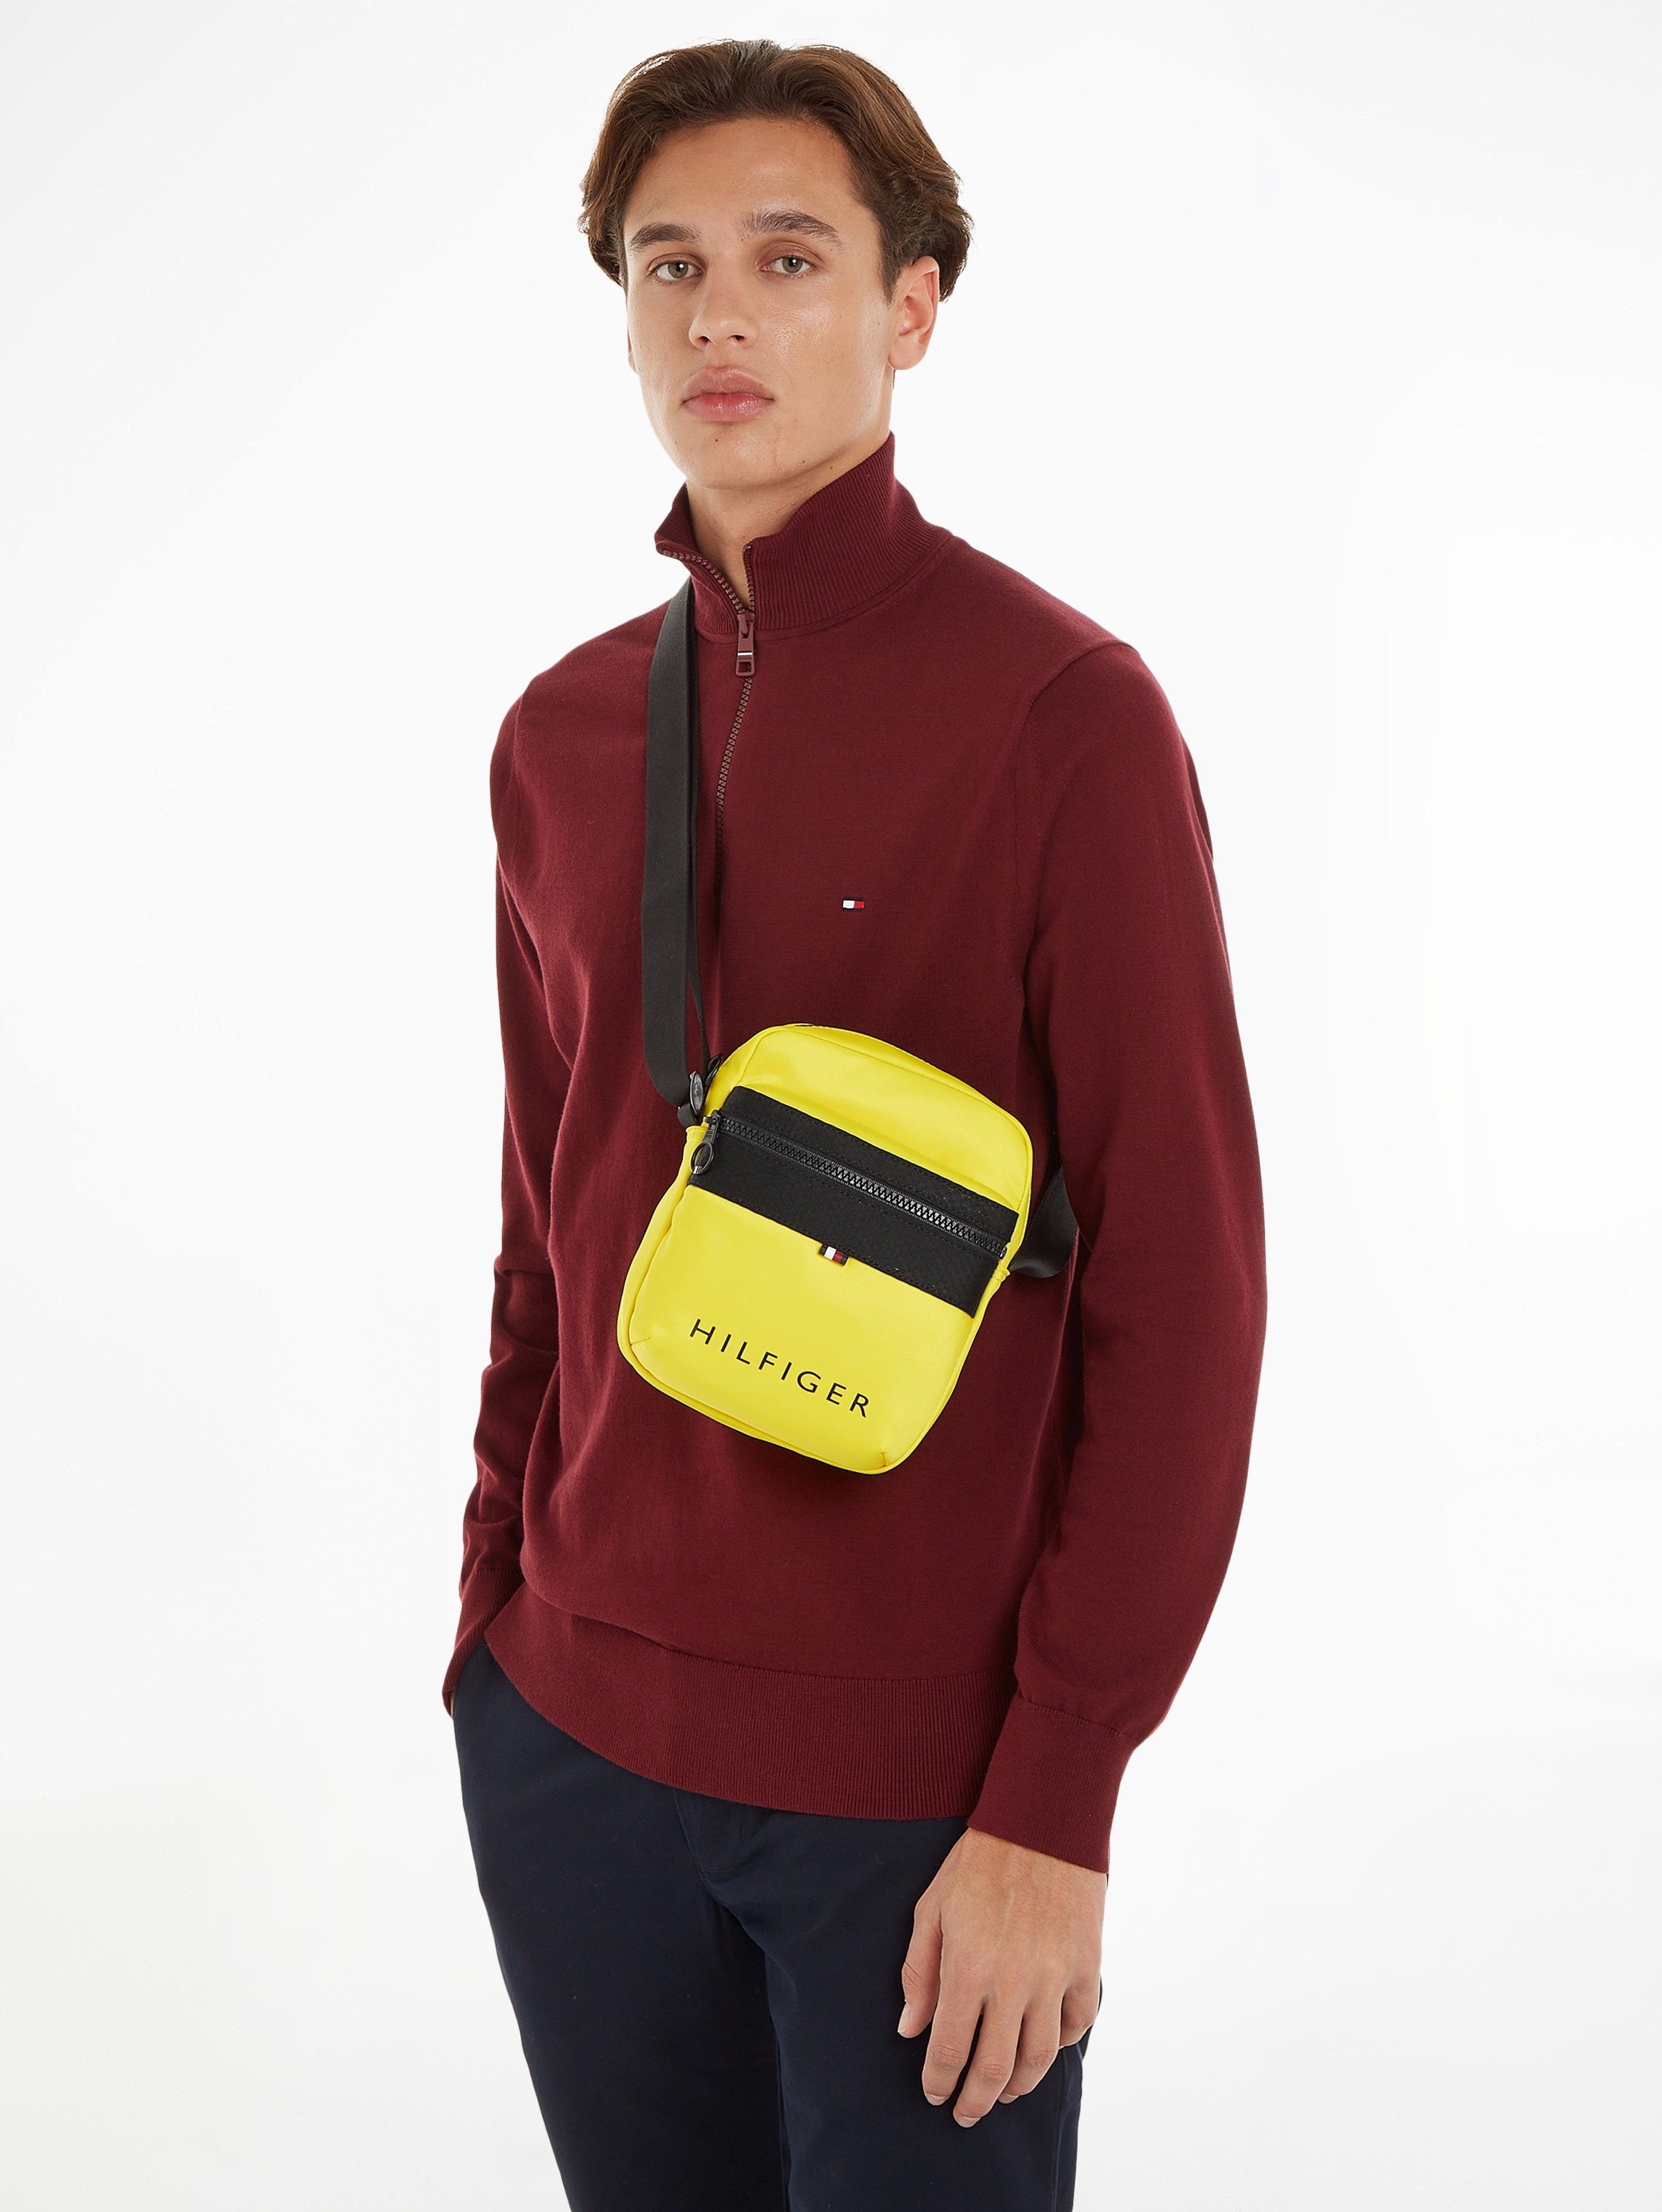 Tommy Hilfiger Mini MINI SKYLINE Markenlogo vorne TH mit gelb Bag REPORTER